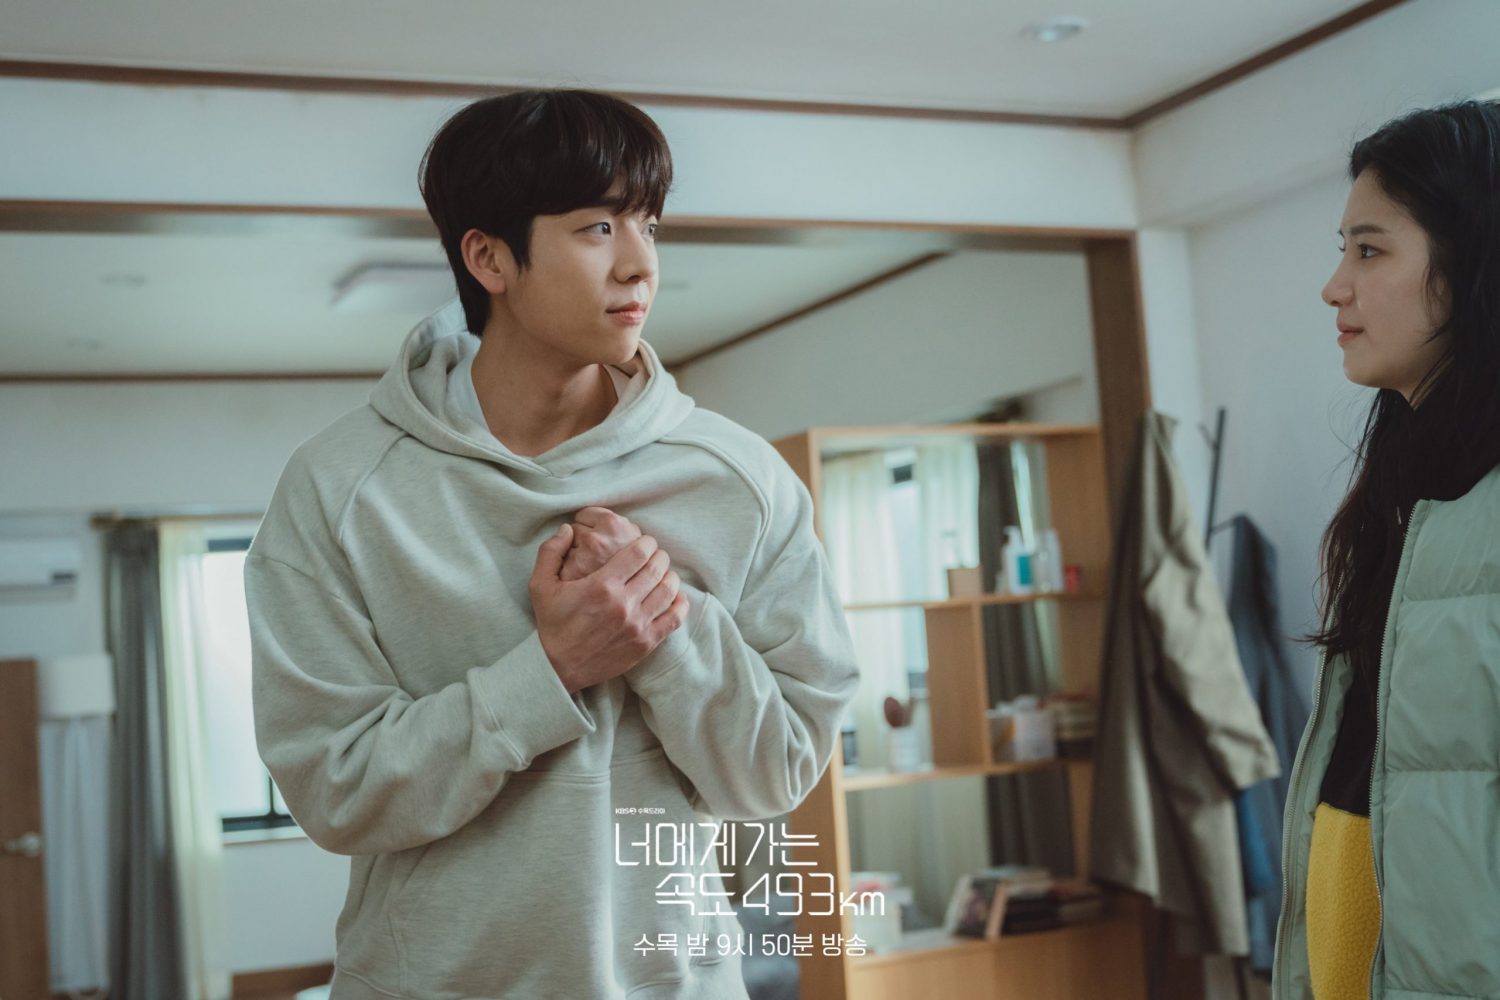 Phim mới của Chae Jong Hyeop: Chạy đến bên em với vận tốc 493km - Love All Play (2022)